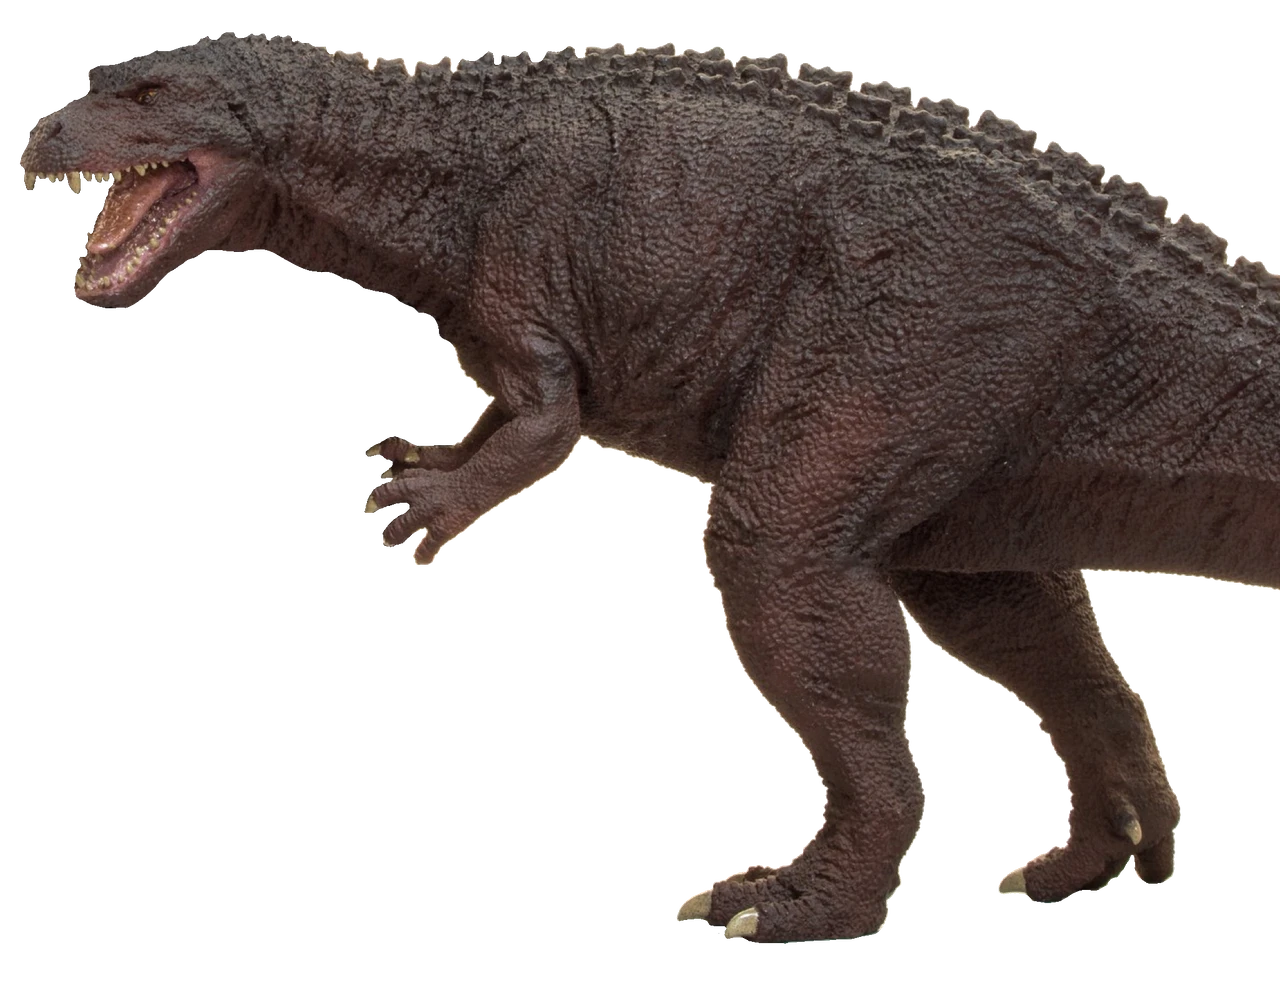 Mod idea - the godzillasaurus.